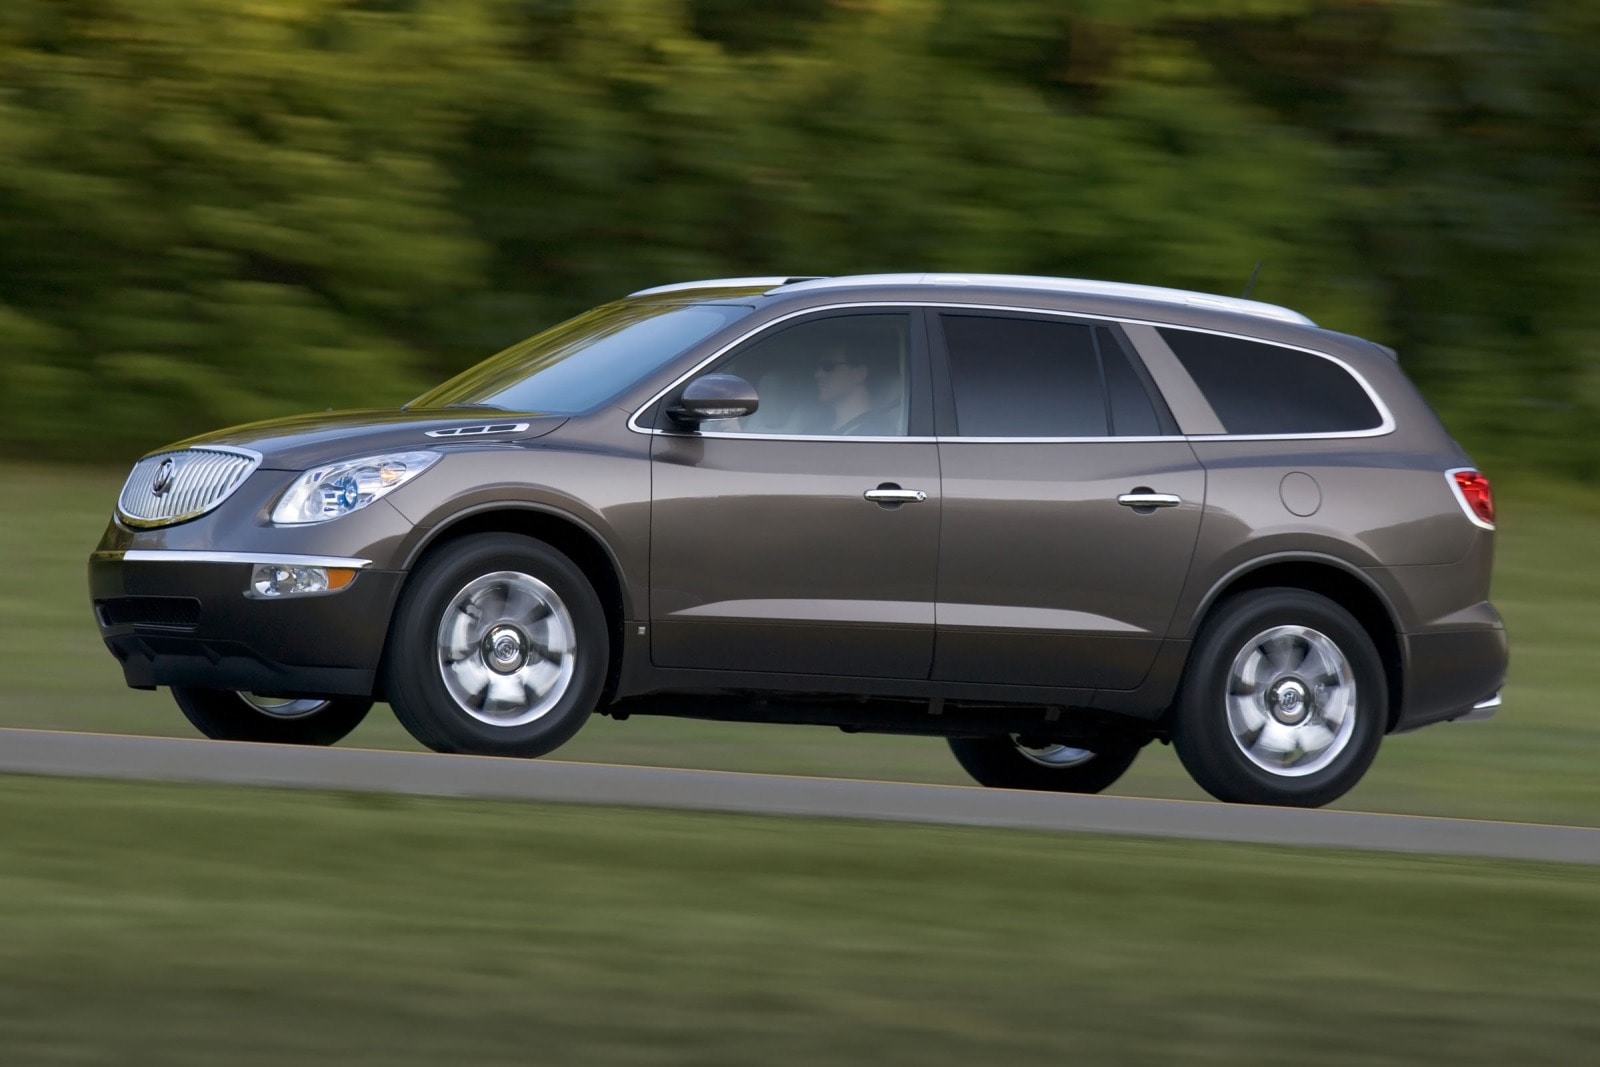 2012 Buick Enclave Review & Ratings | Edmunds